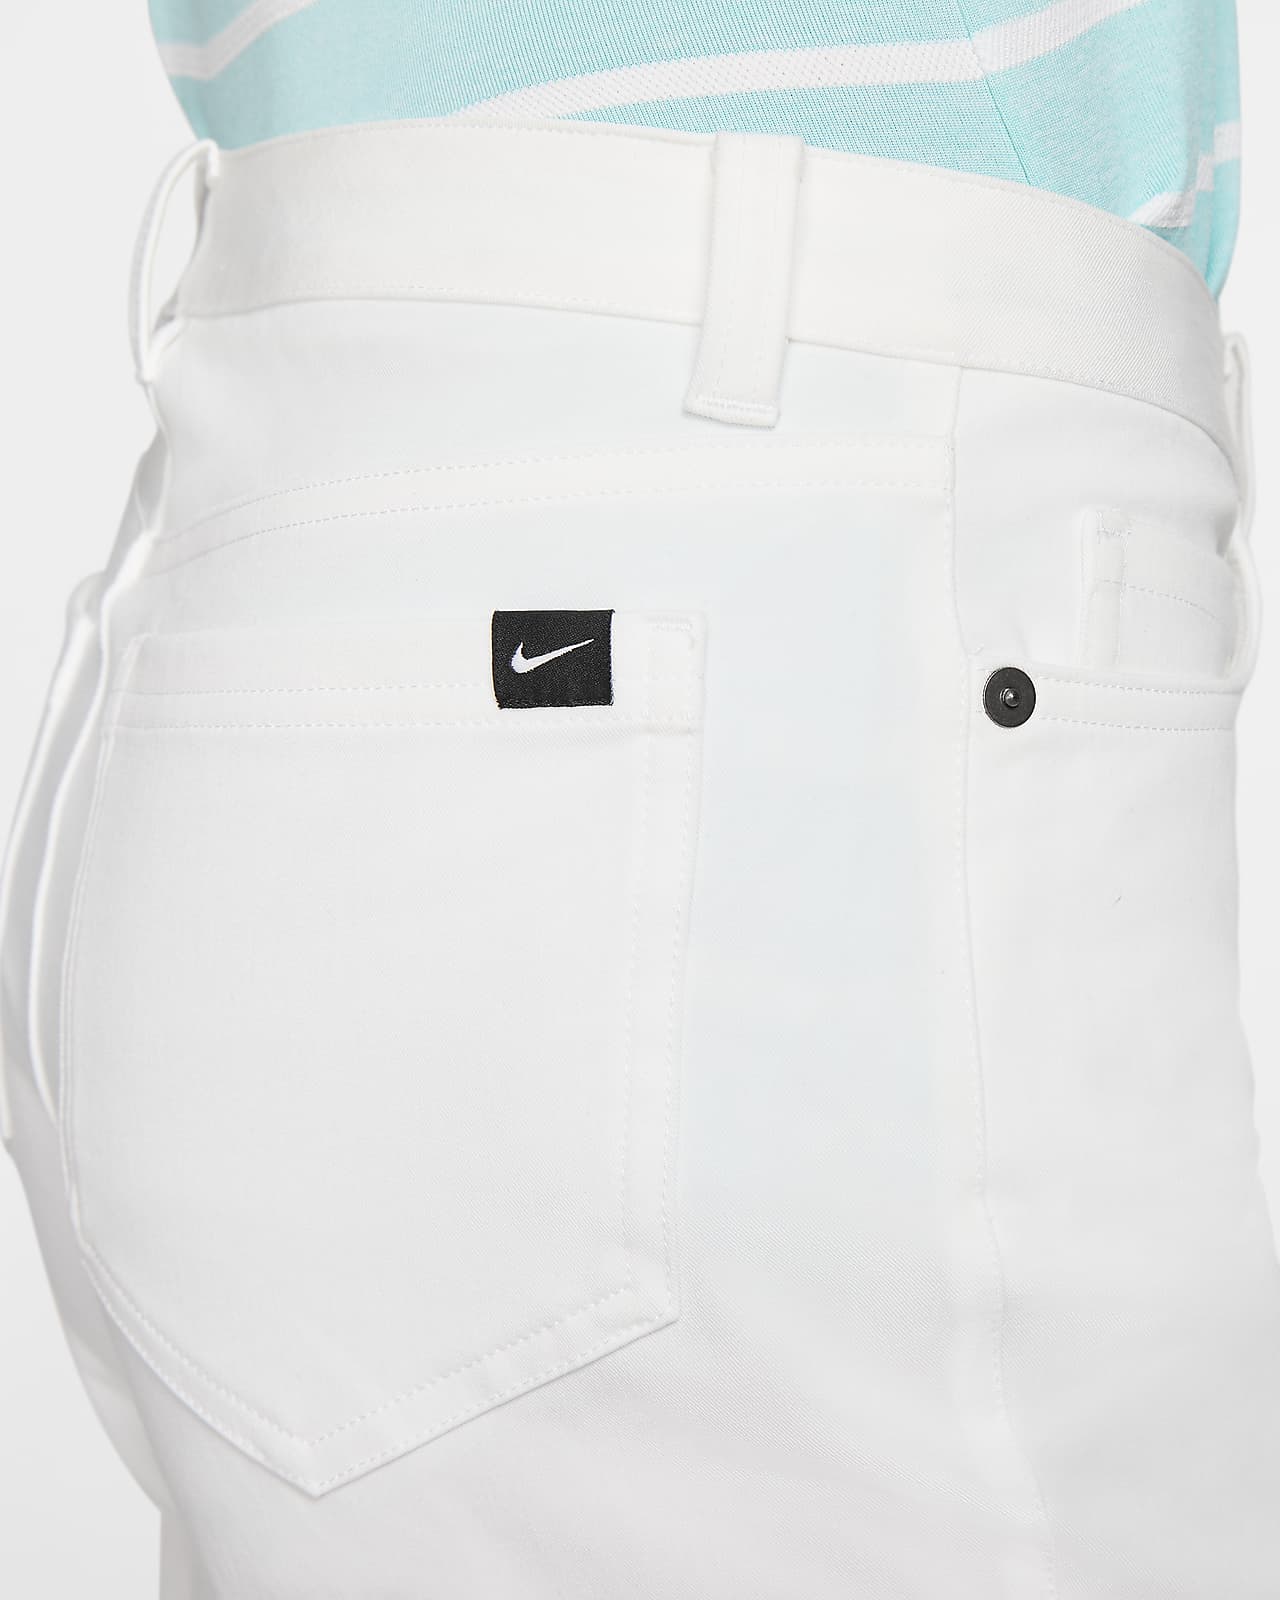 Nike Women's Size 8 Flex Dri-Fit Golf Pants White 884934-100